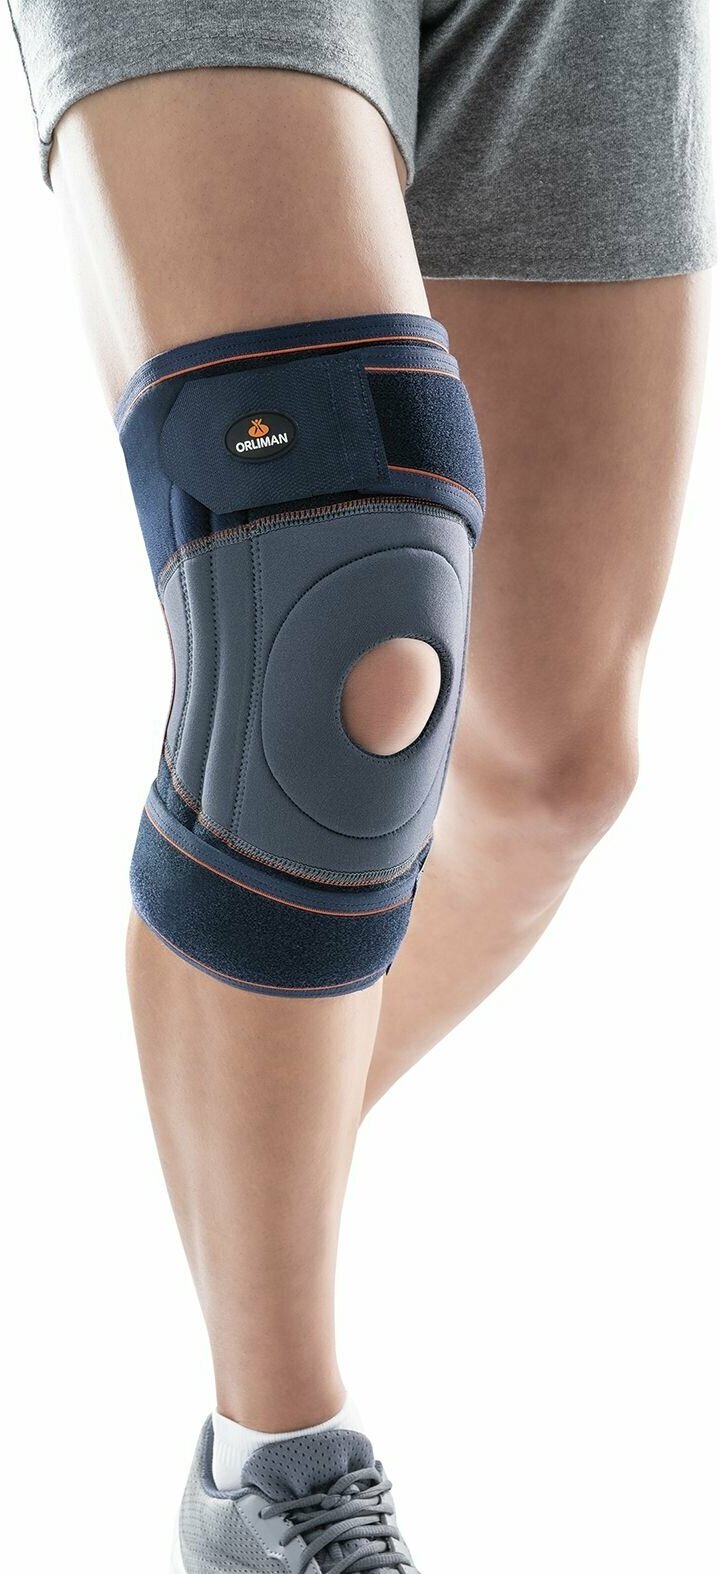 Наколенники ортопедические для суставов Orliman Испания бандаж на коленный сустав из неопрена с открытой коленной чашечкой окутывающий 4119 при артрозе колена